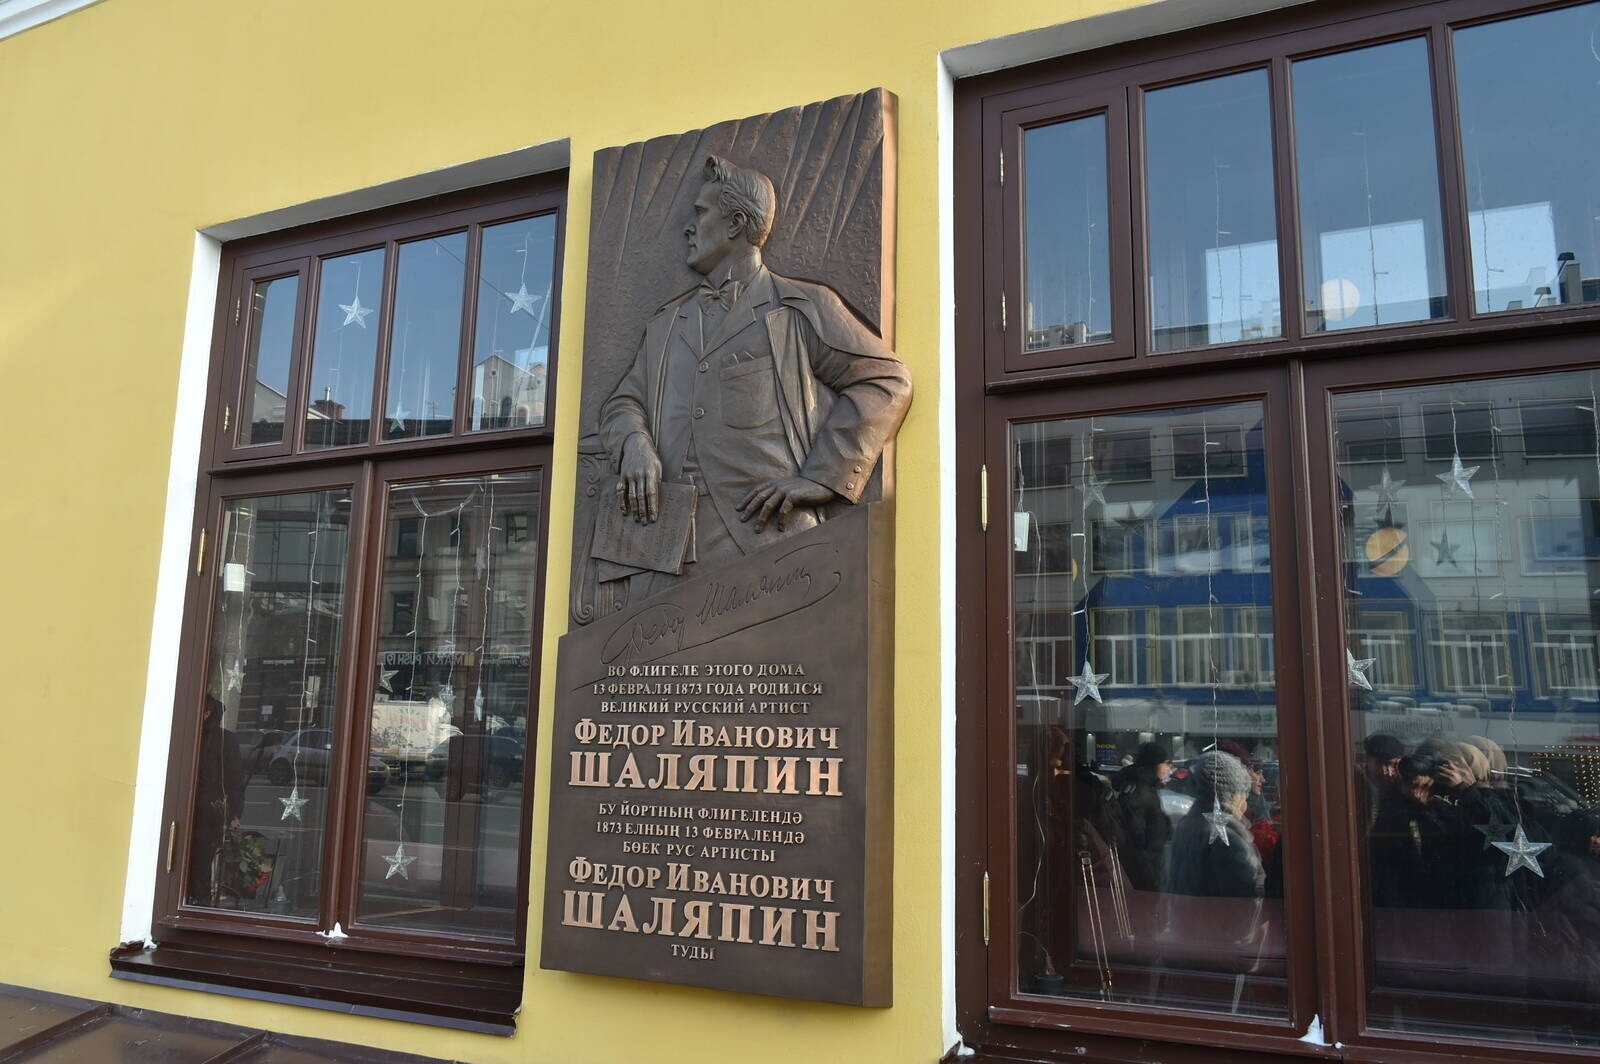 Мемориальная доска Федору Шаляпину появилась на фасаде дома в Казани, где он родился